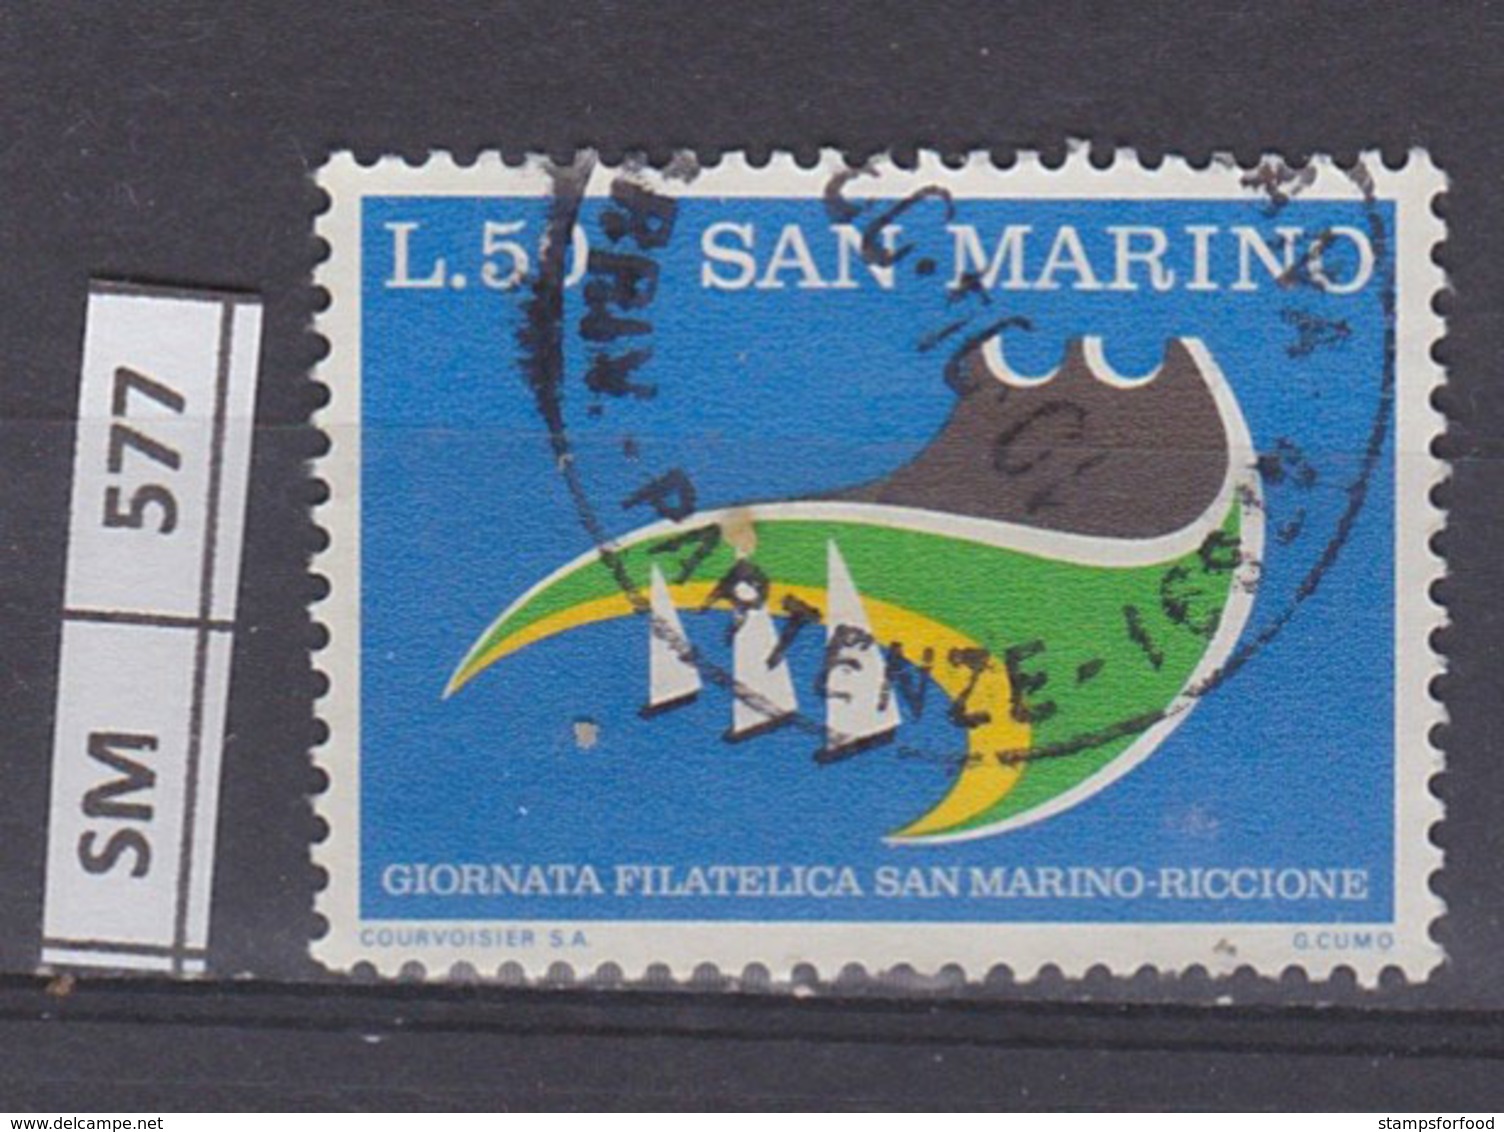 SAN MARINO  1974	Giornata Filatelica, L. 50 Usato - Used Stamps